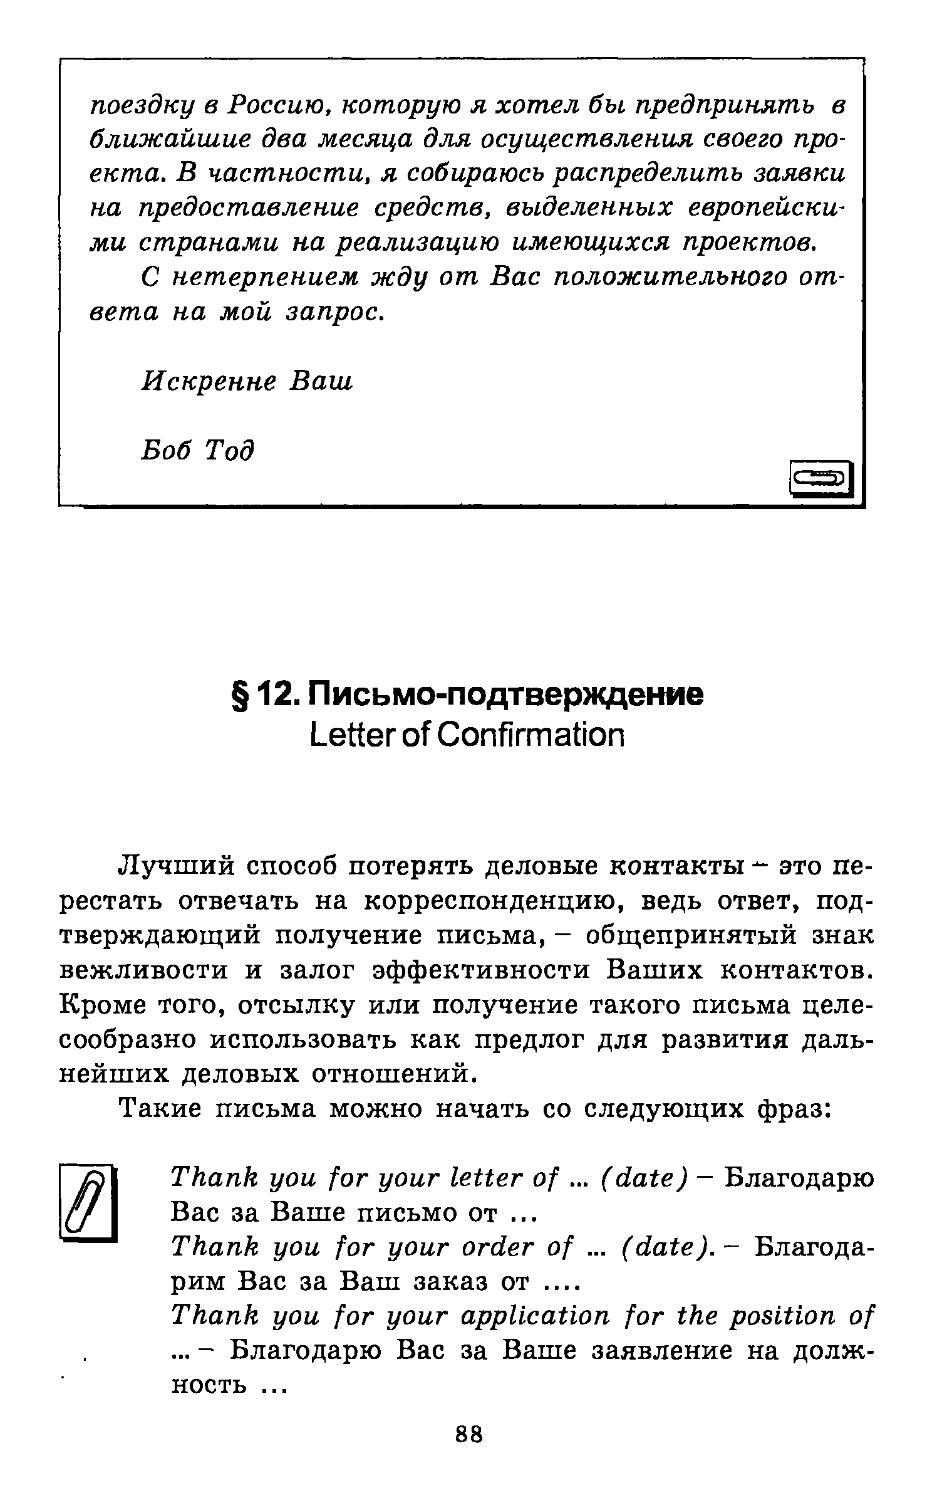 §12. Письмо-подтверждение. Letter of Confirmation